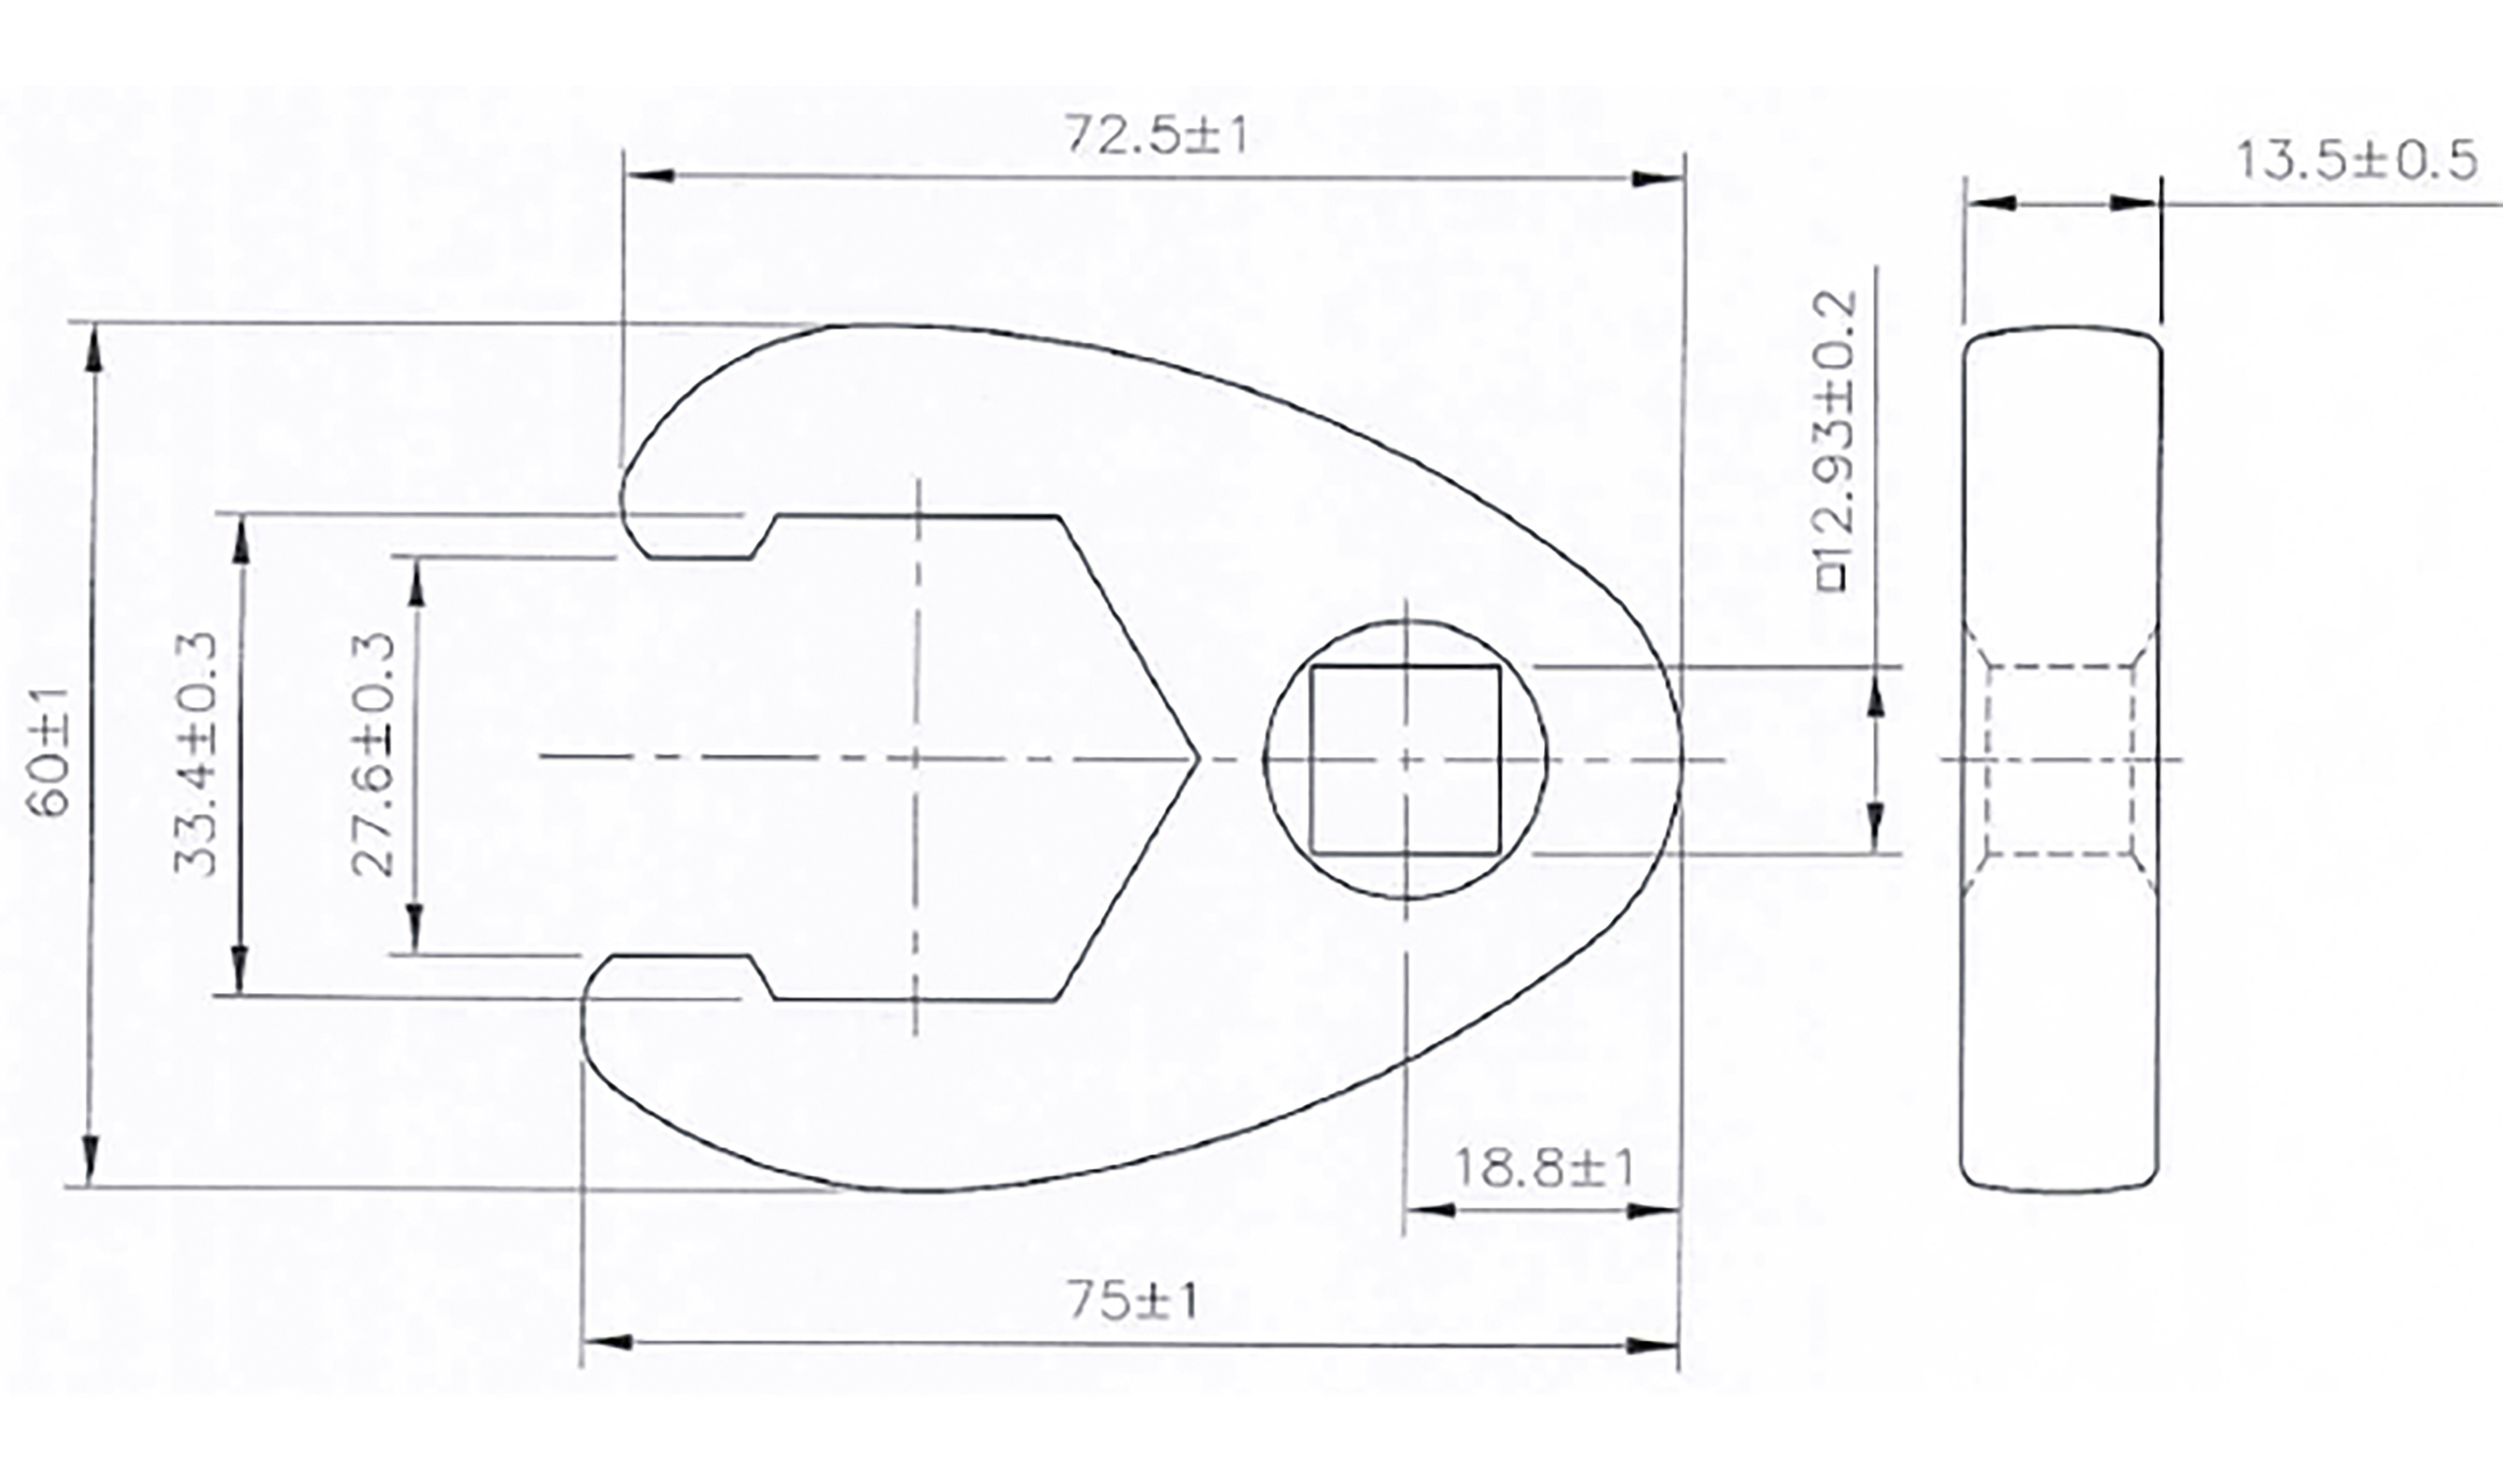 BGS Hahnenfußschlüssel | Antrieb Innenvierkant 12,5 mm (1/2") | SW 33 mm